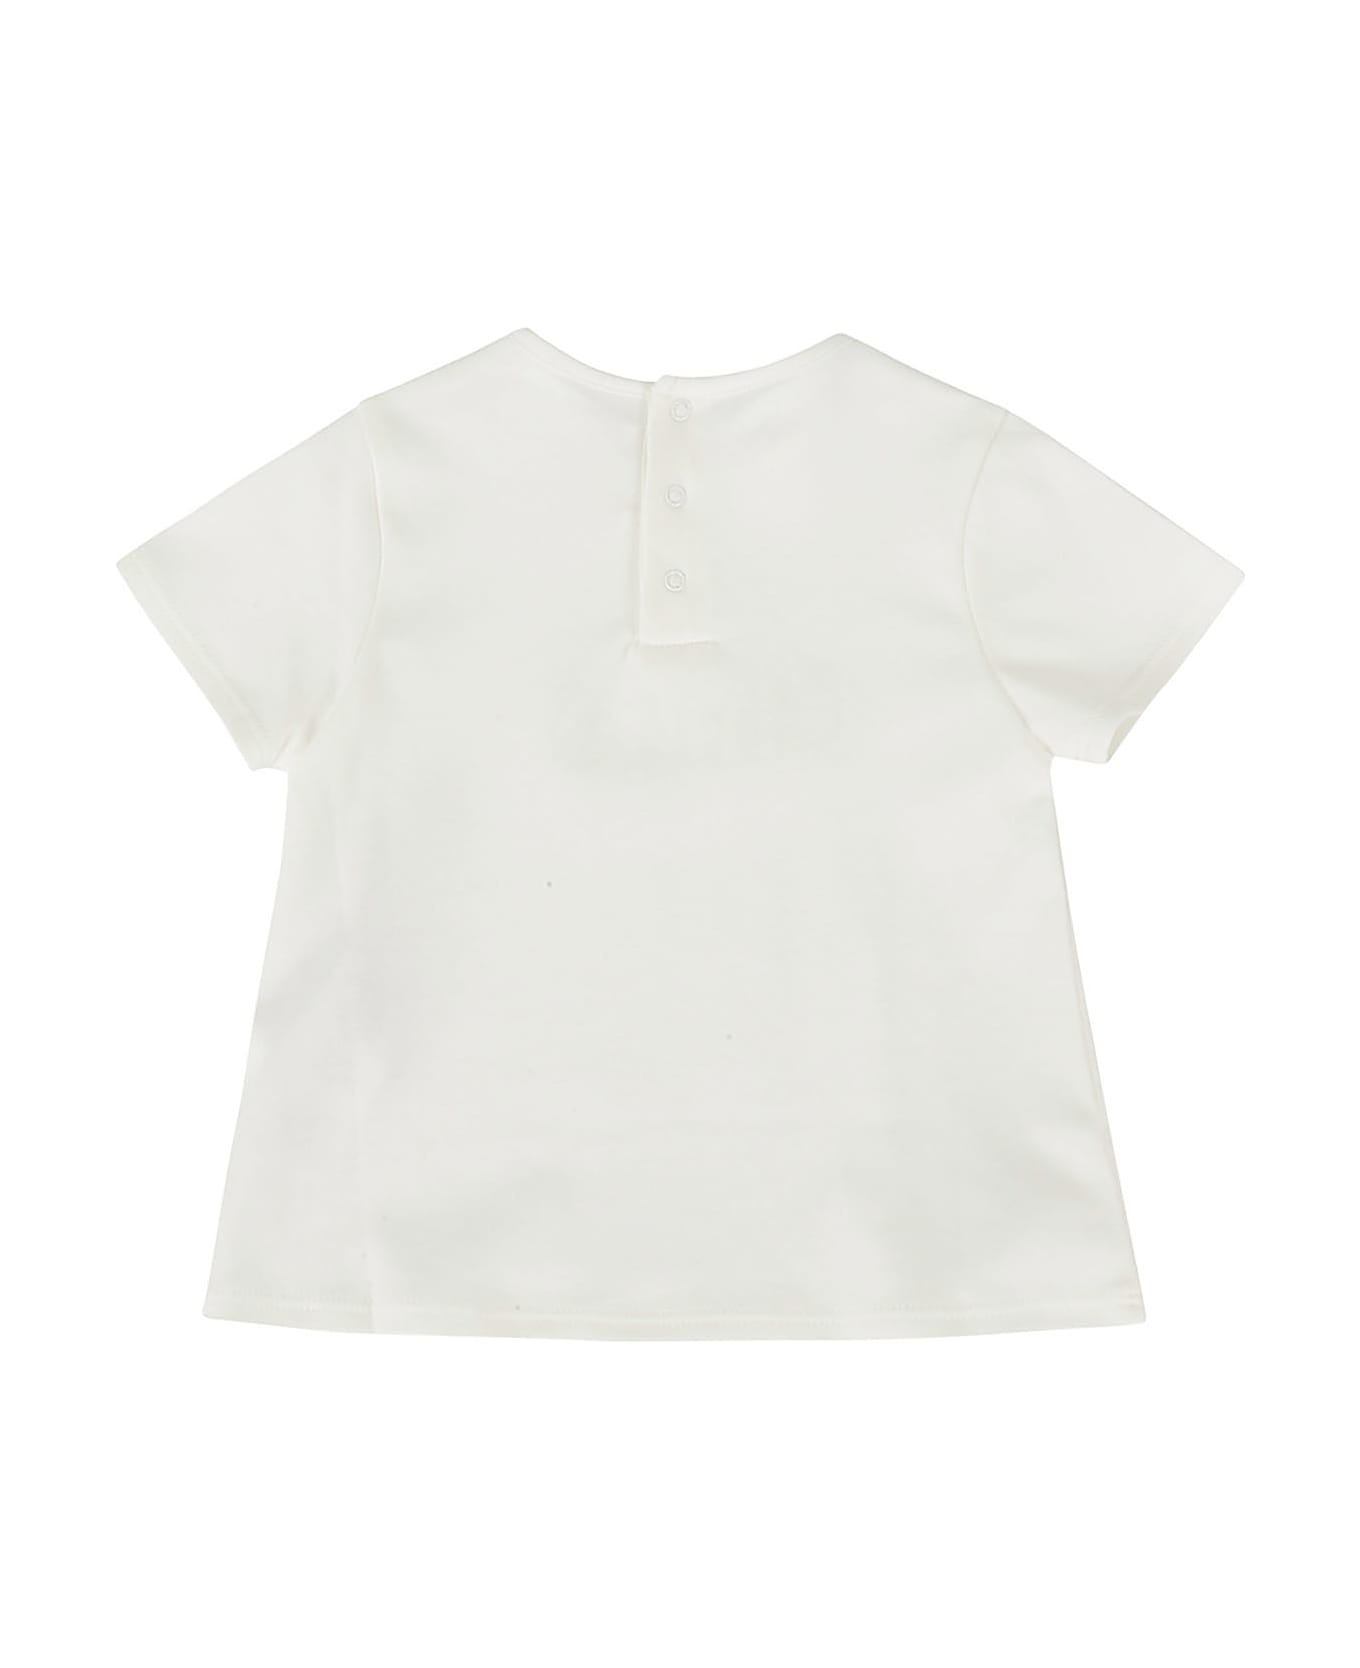 Chloé Tee Shirt - Bianco Sporco